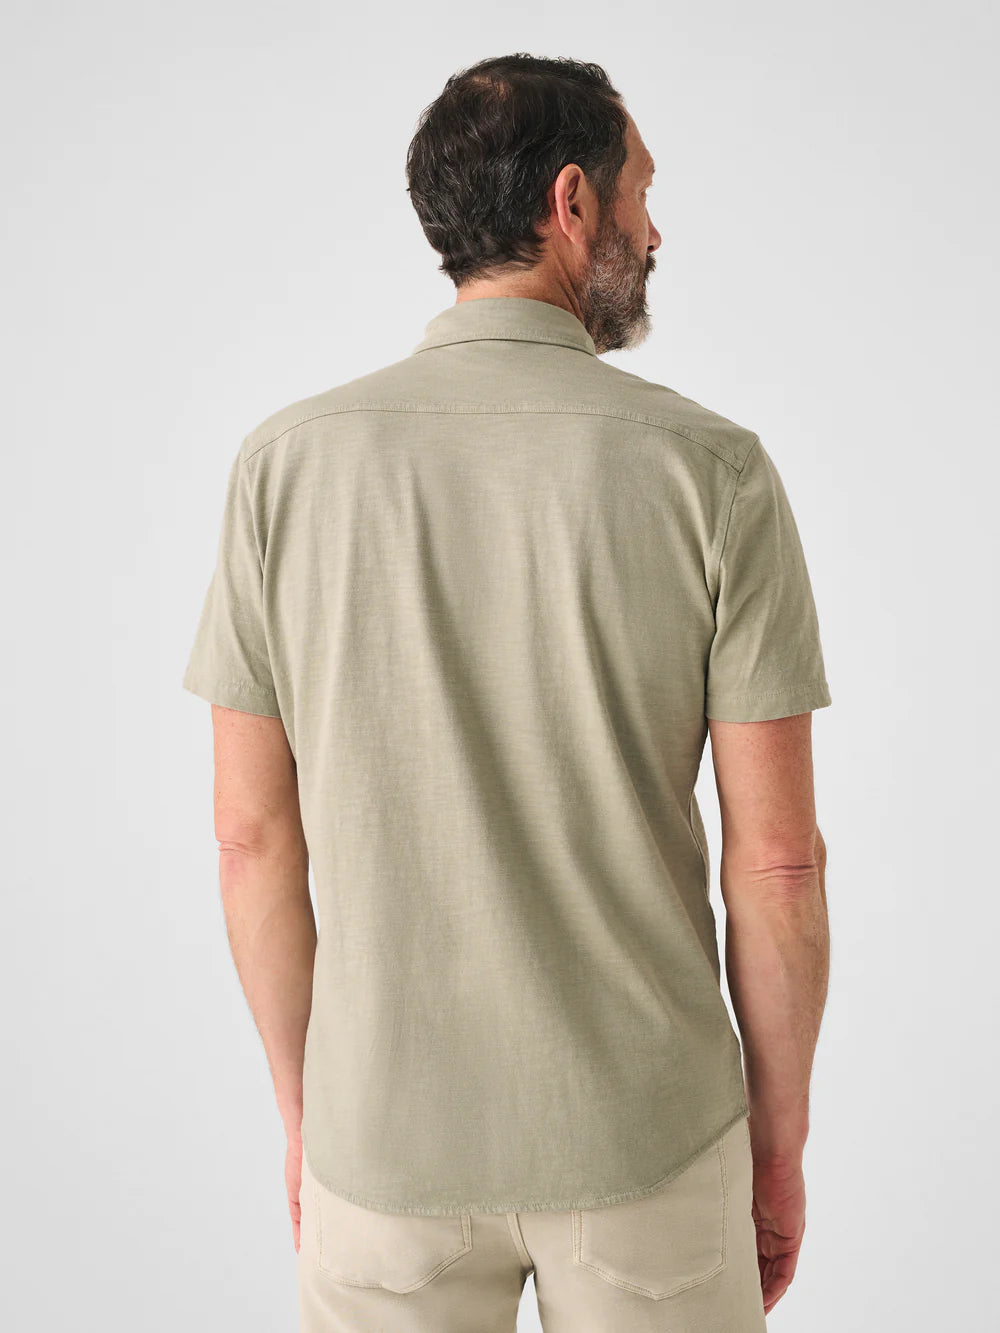 Short- Sleeve Knit Seasons Shirt - Coastal Sage